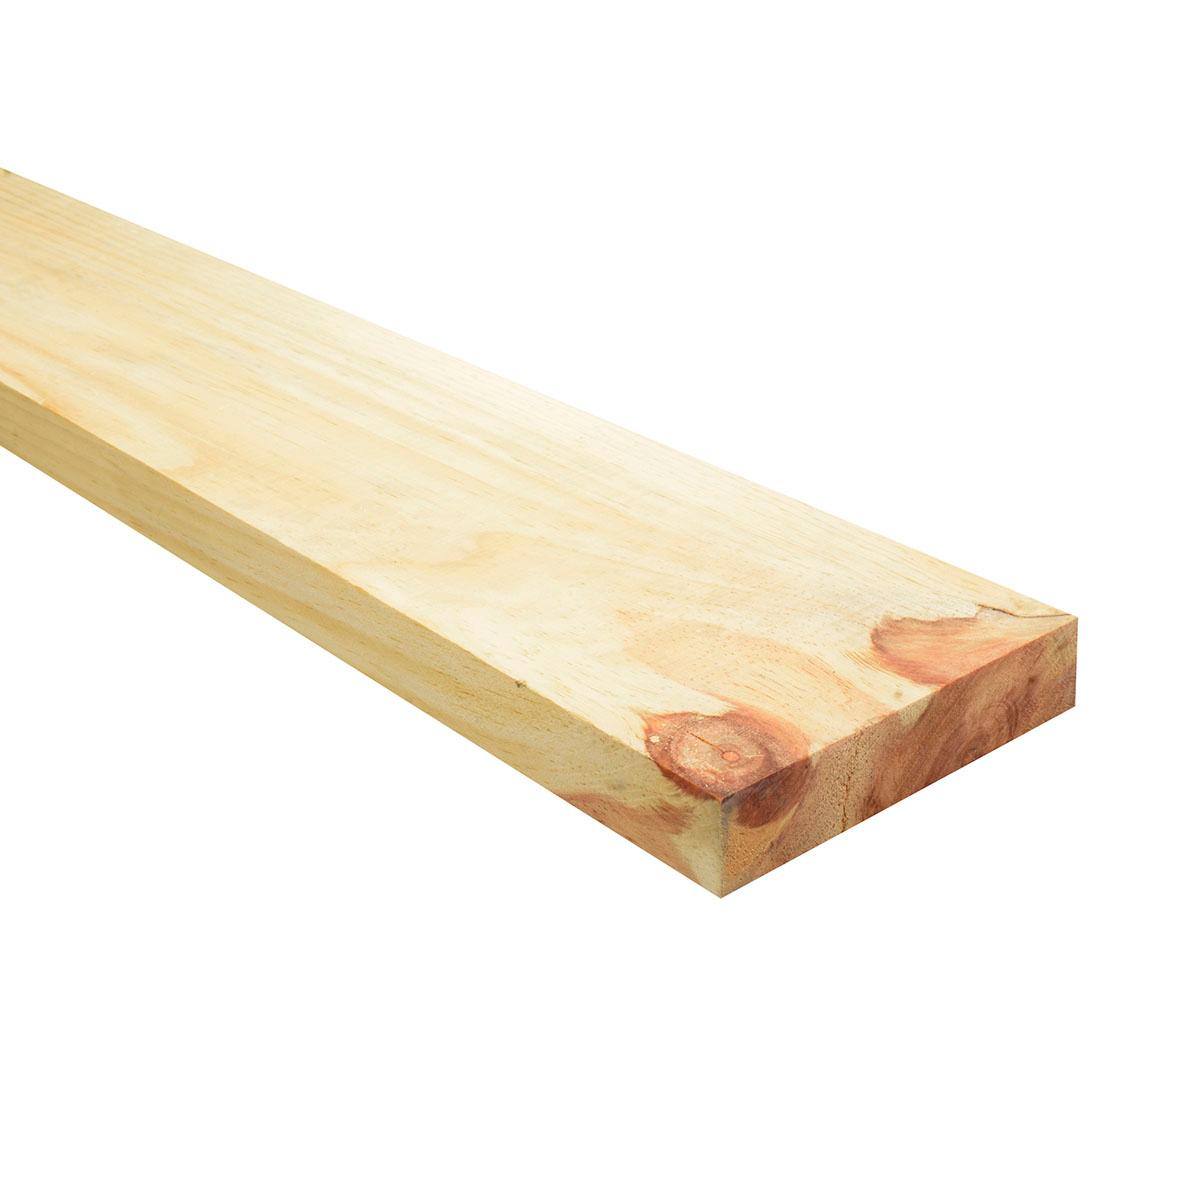 Pack de 6 tablones madera de pino tratado de 21x115x2400 mm